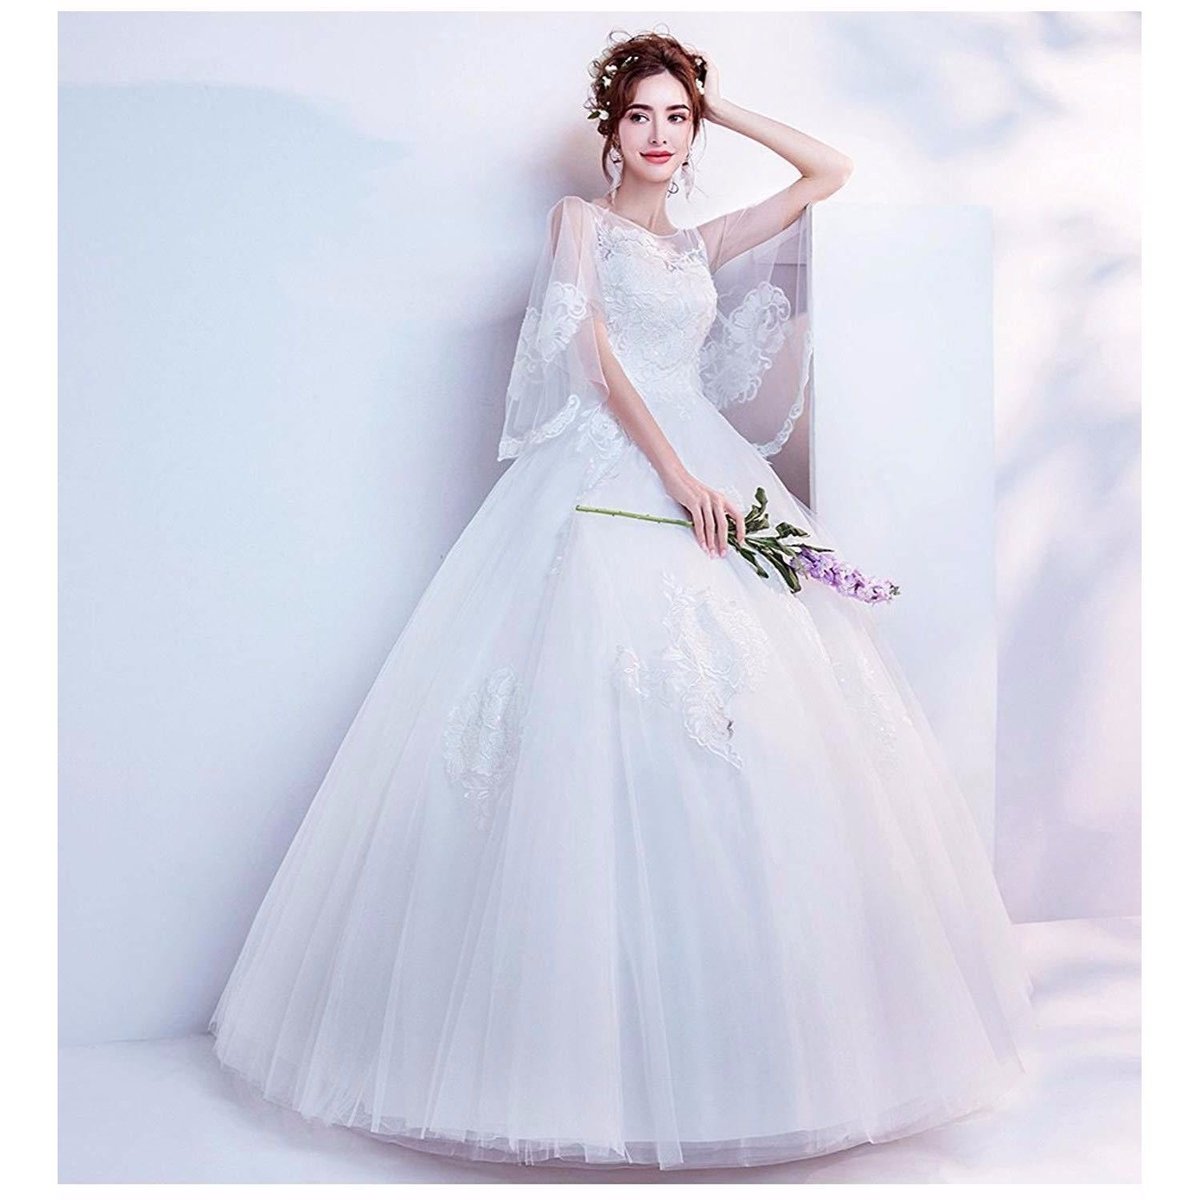 ウェディングドレス ドレス 可愛い 花嫁ドレス 着やせ ロング プリンセス 二次会 結婚式 撮影ドレス